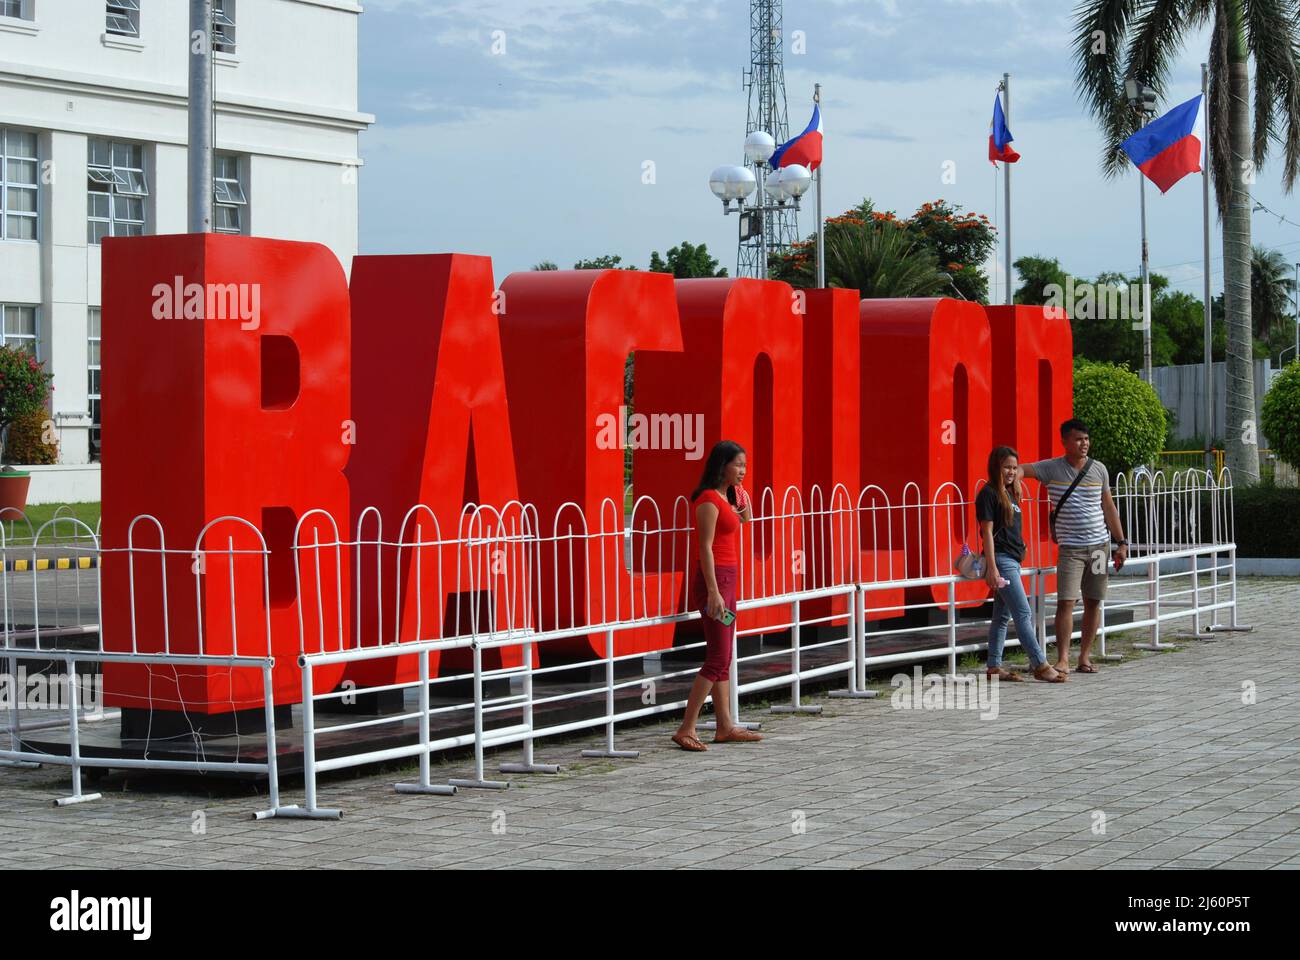 Grand panneau rouge Bacolod à l'extérieur du nouveau centre gouvernemental Bacolod dans le centre-ville de Bacolod City, Negros Occidental, Philippines. Banque D'Images